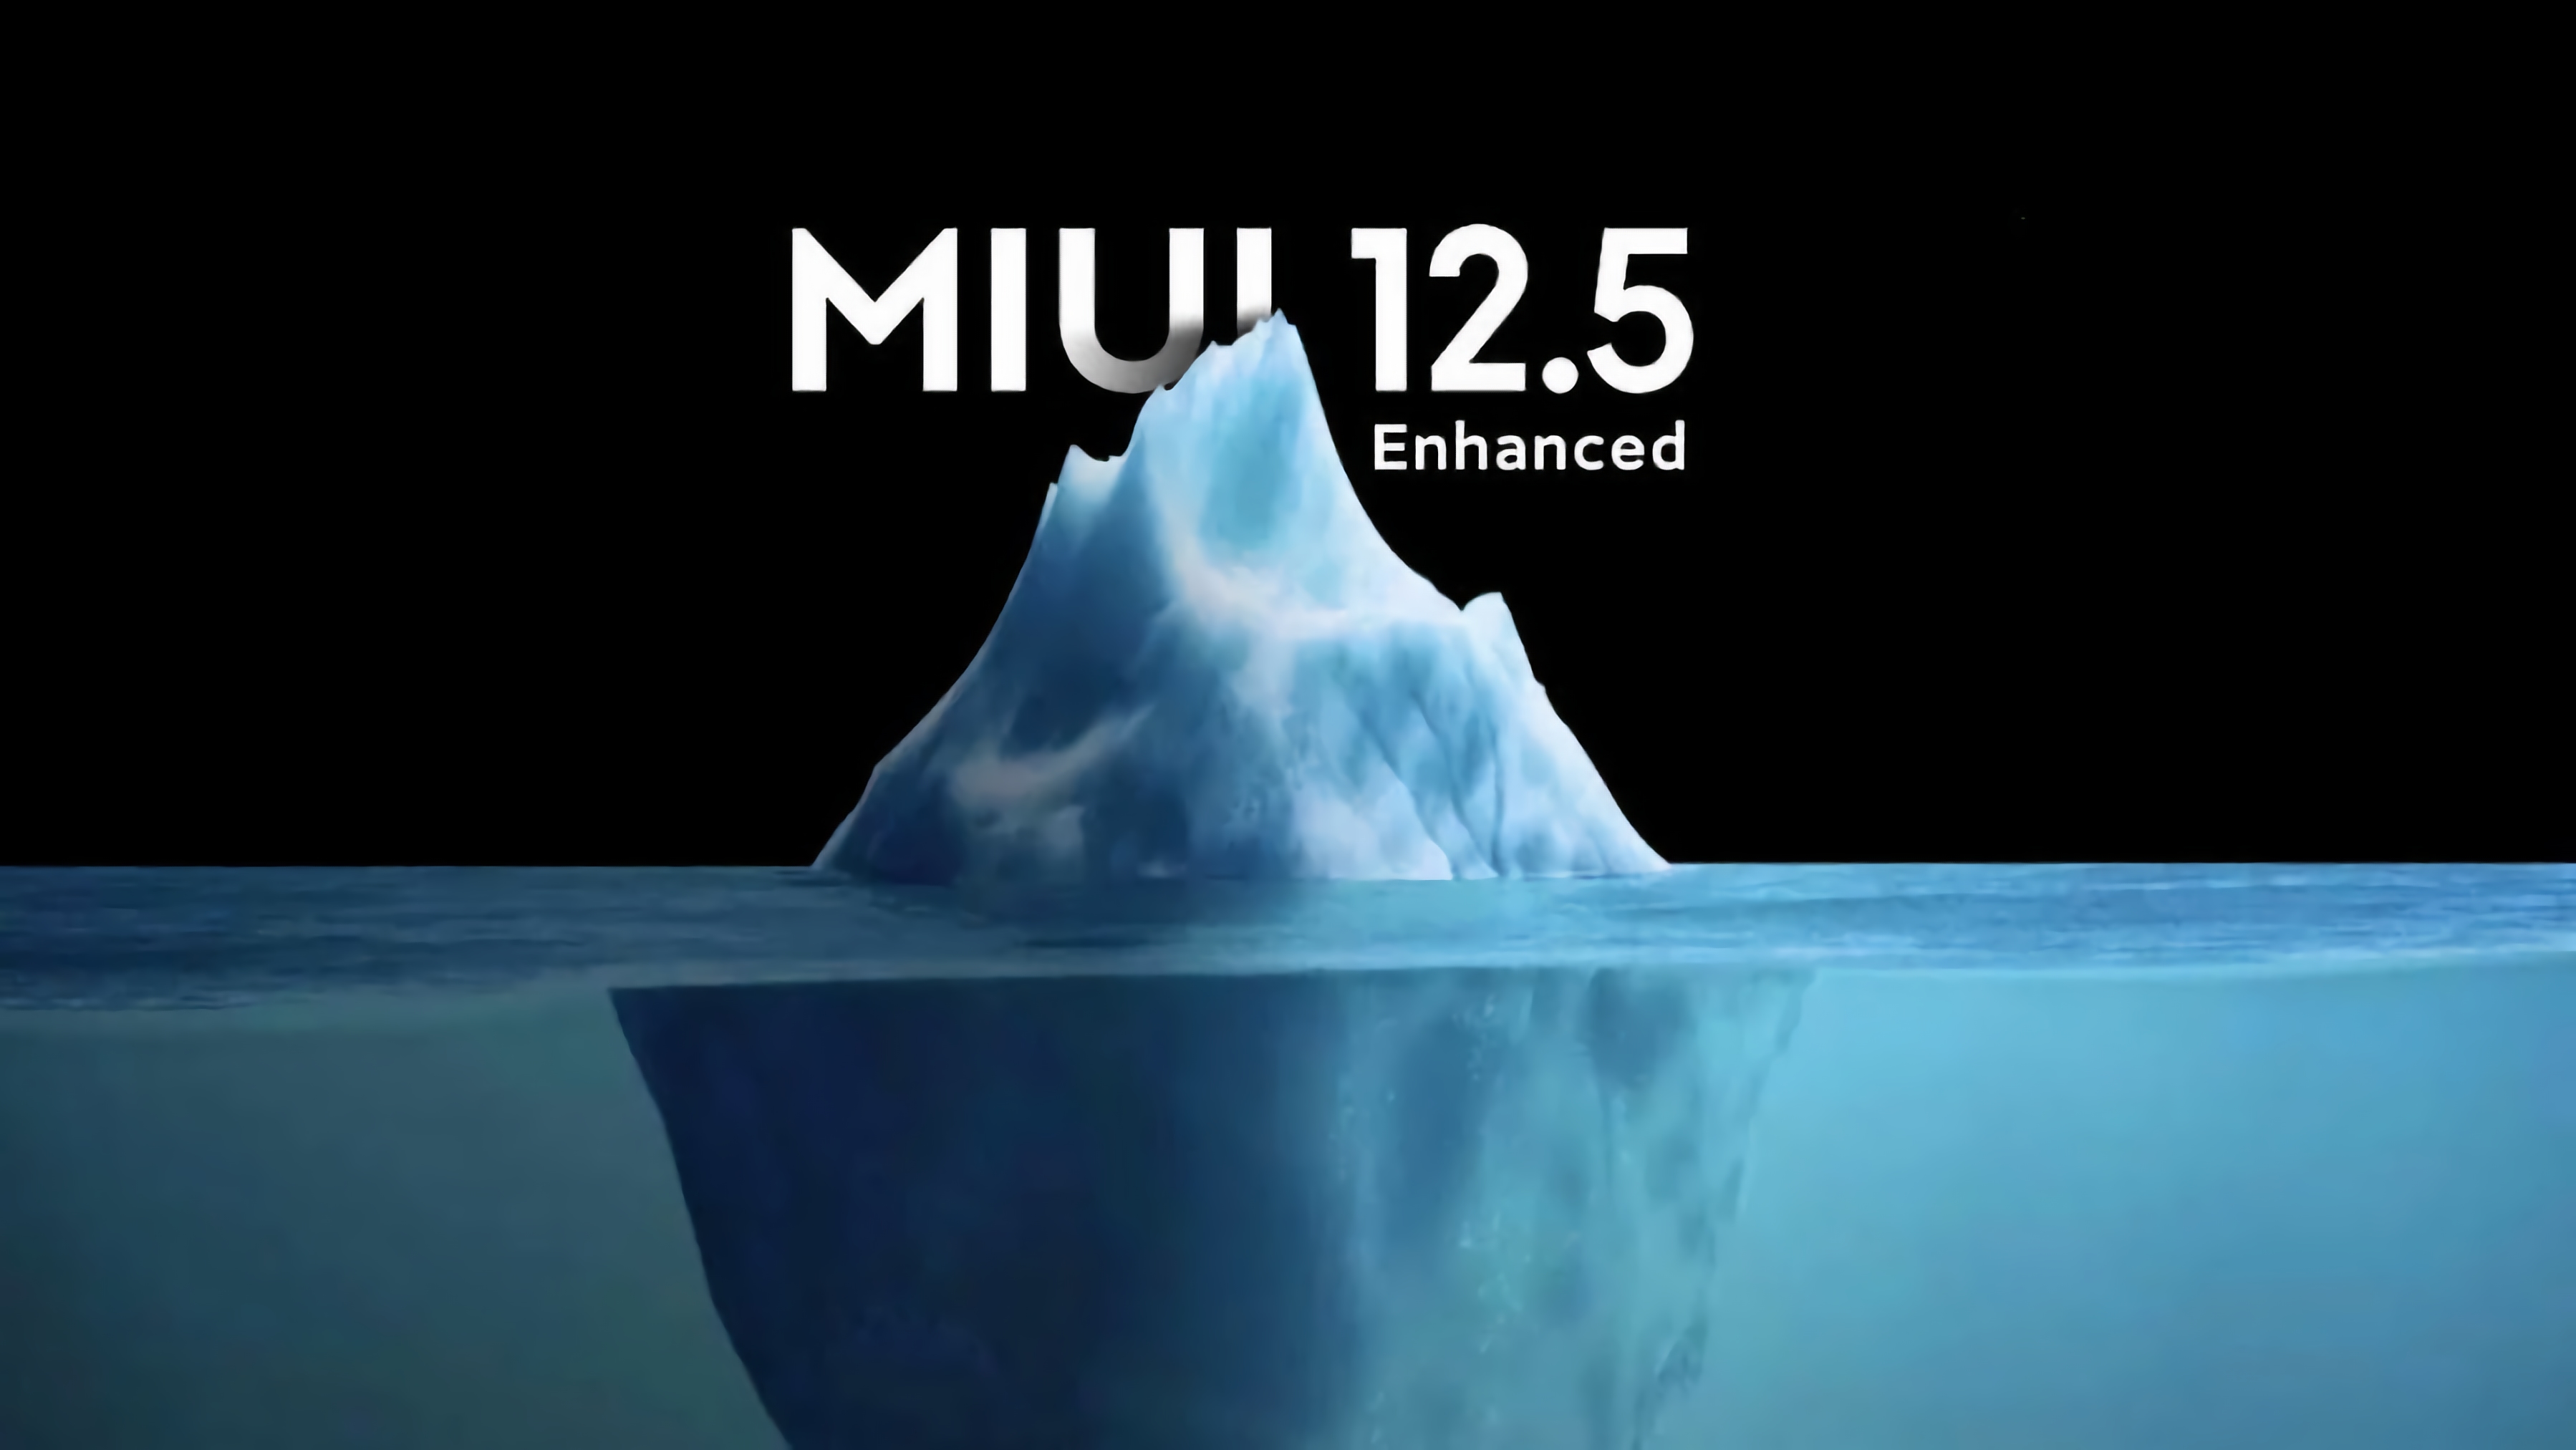 Quali smartphone Redmi non riceveranno l'aggiornamento MIUI 12.5 Enhanced Edition è stato rivelato